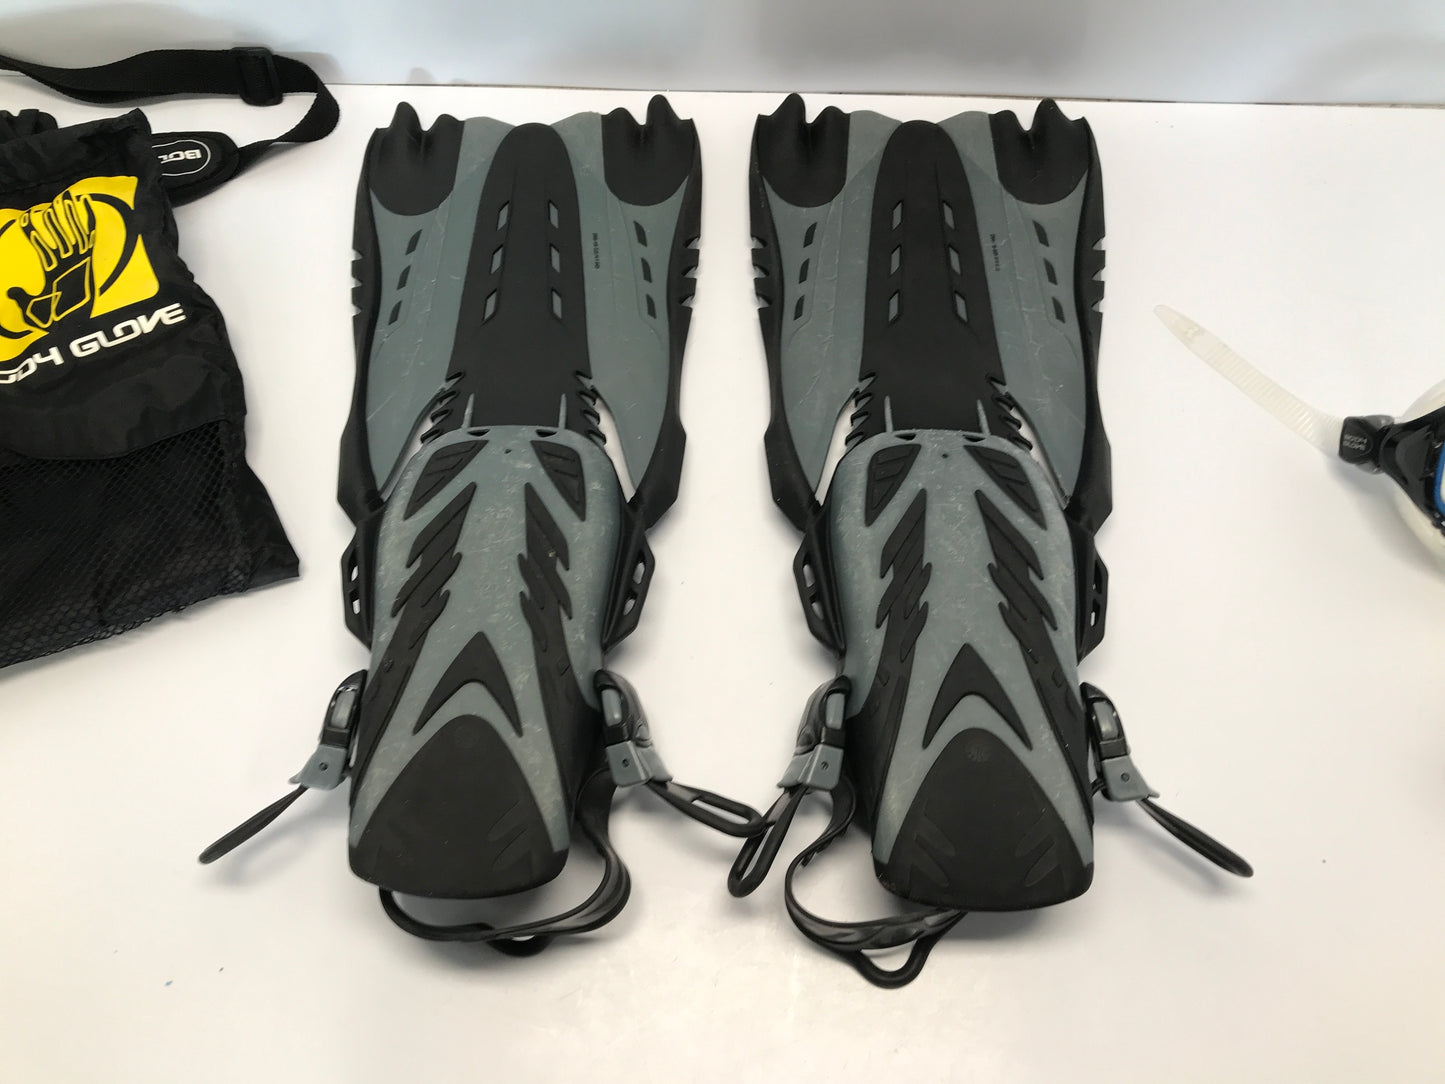 Snorkel Dive Fins Swim Set Men's Size 9-13 Shoe Size Body Glove Black Grey Excellent